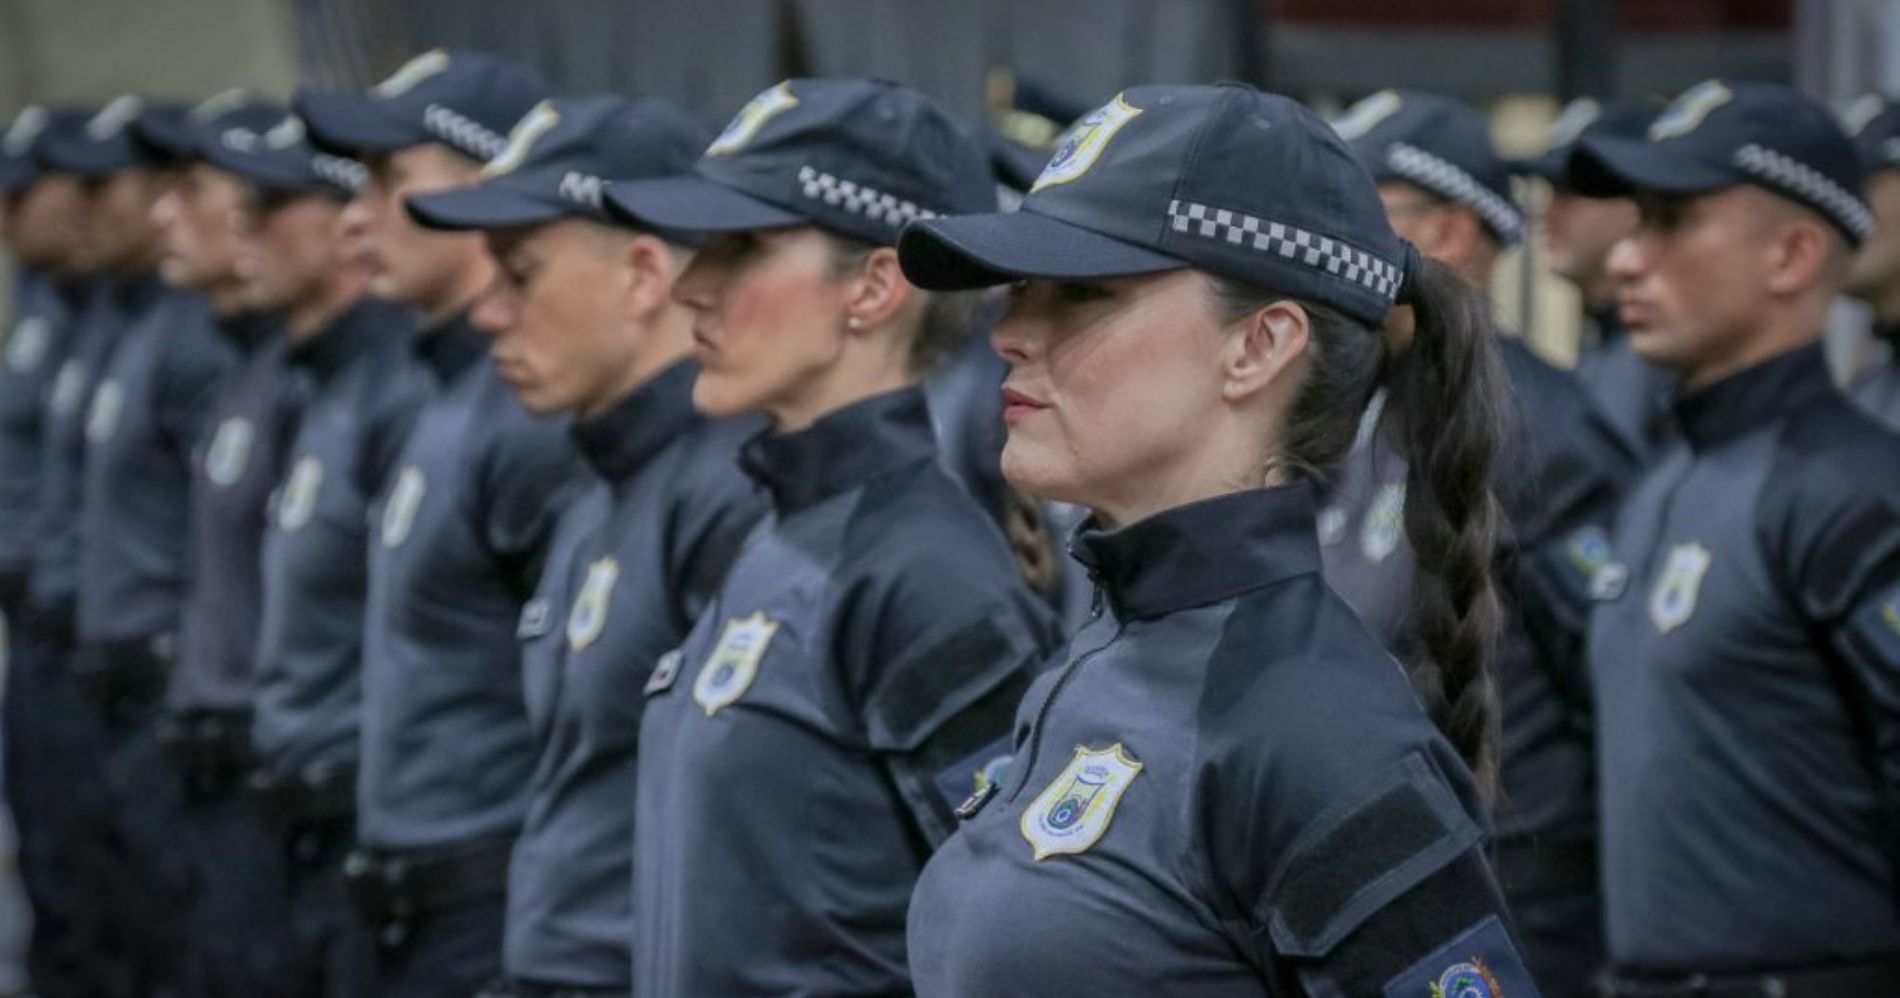 Guarda Municipal realiza formatura de 45 novos agentes de segurança pública